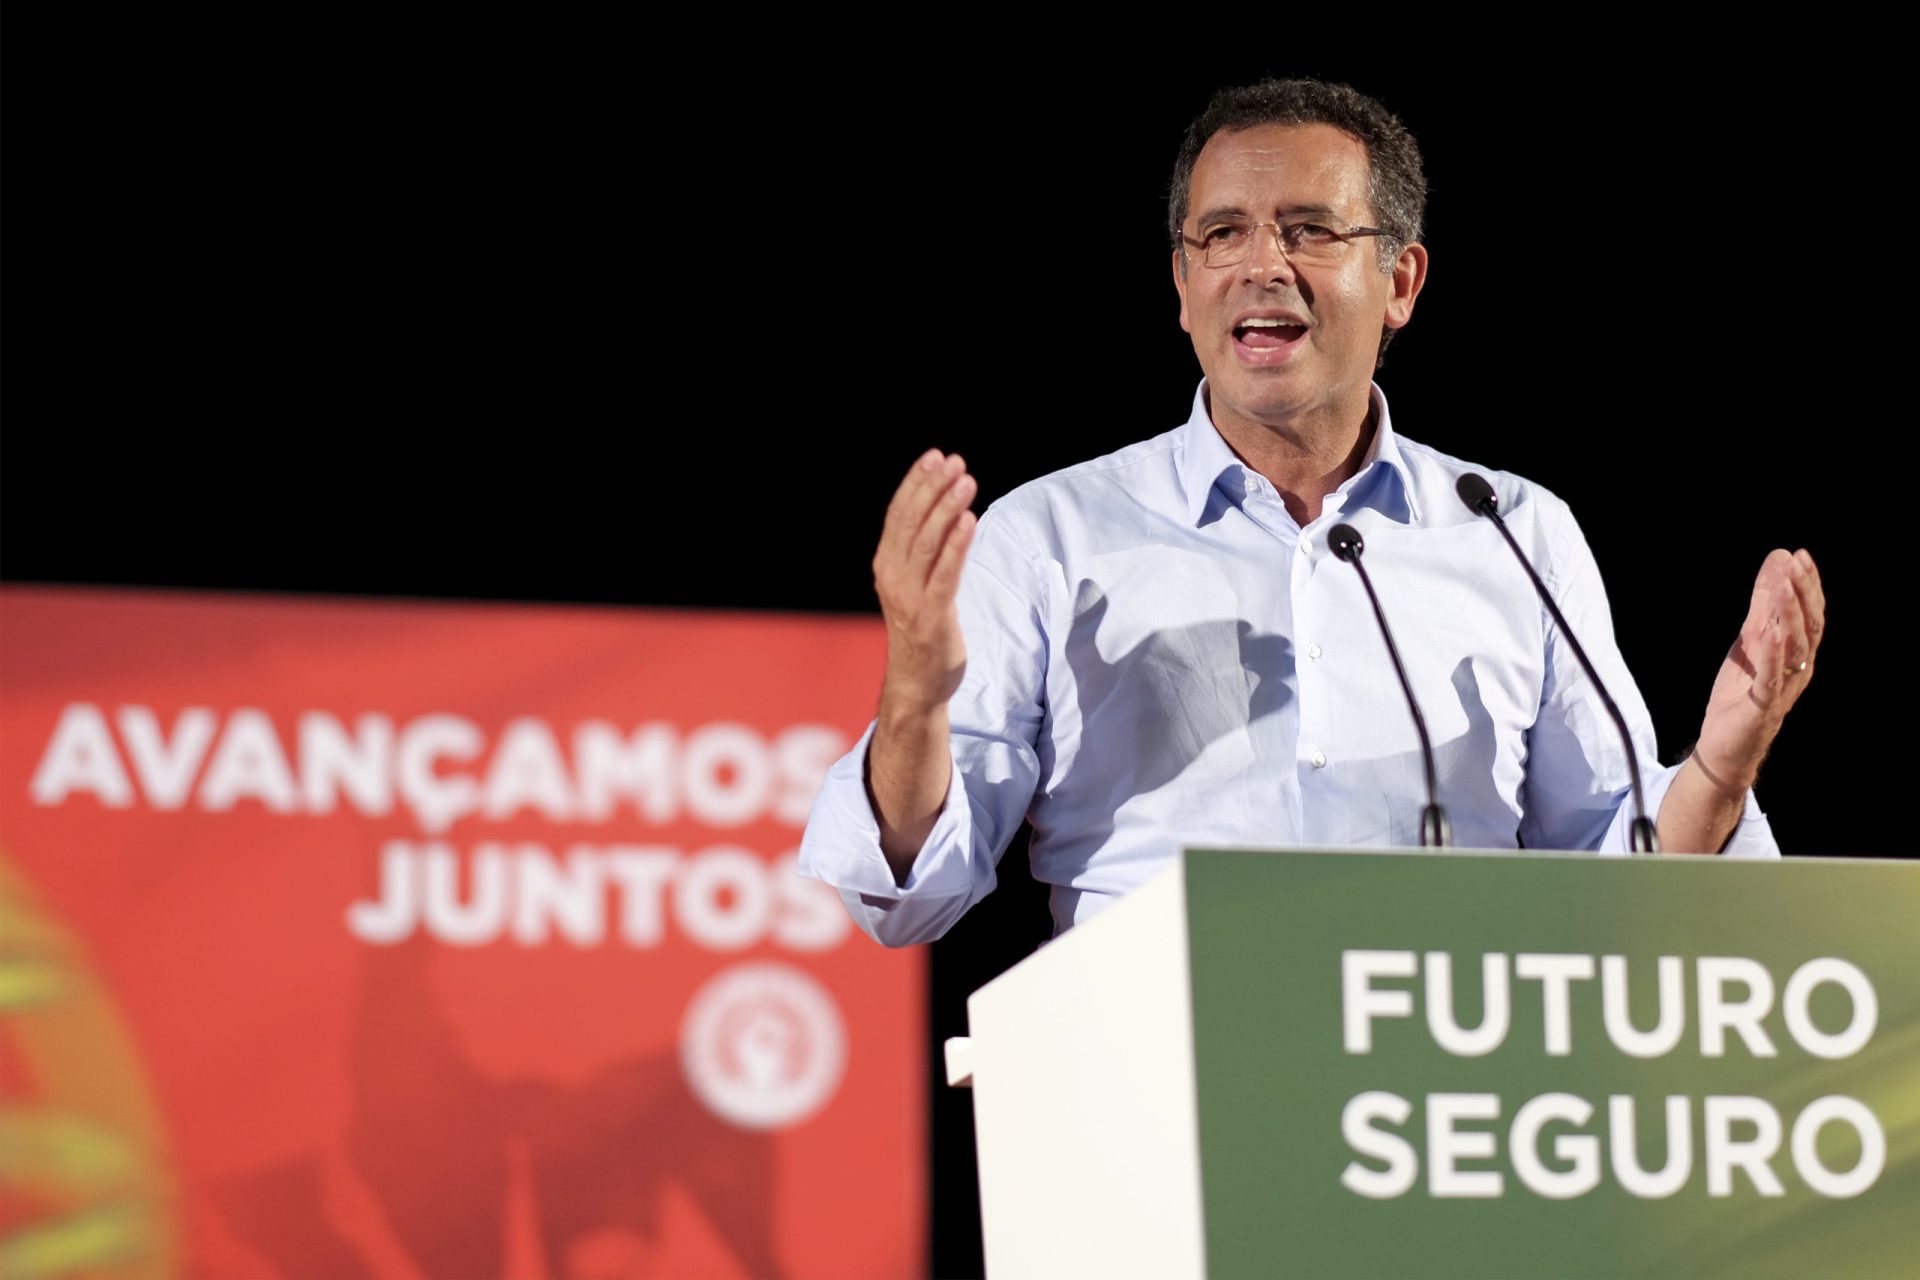 António José Seguro diz estar “muito, muito satisfeito” com a campanha